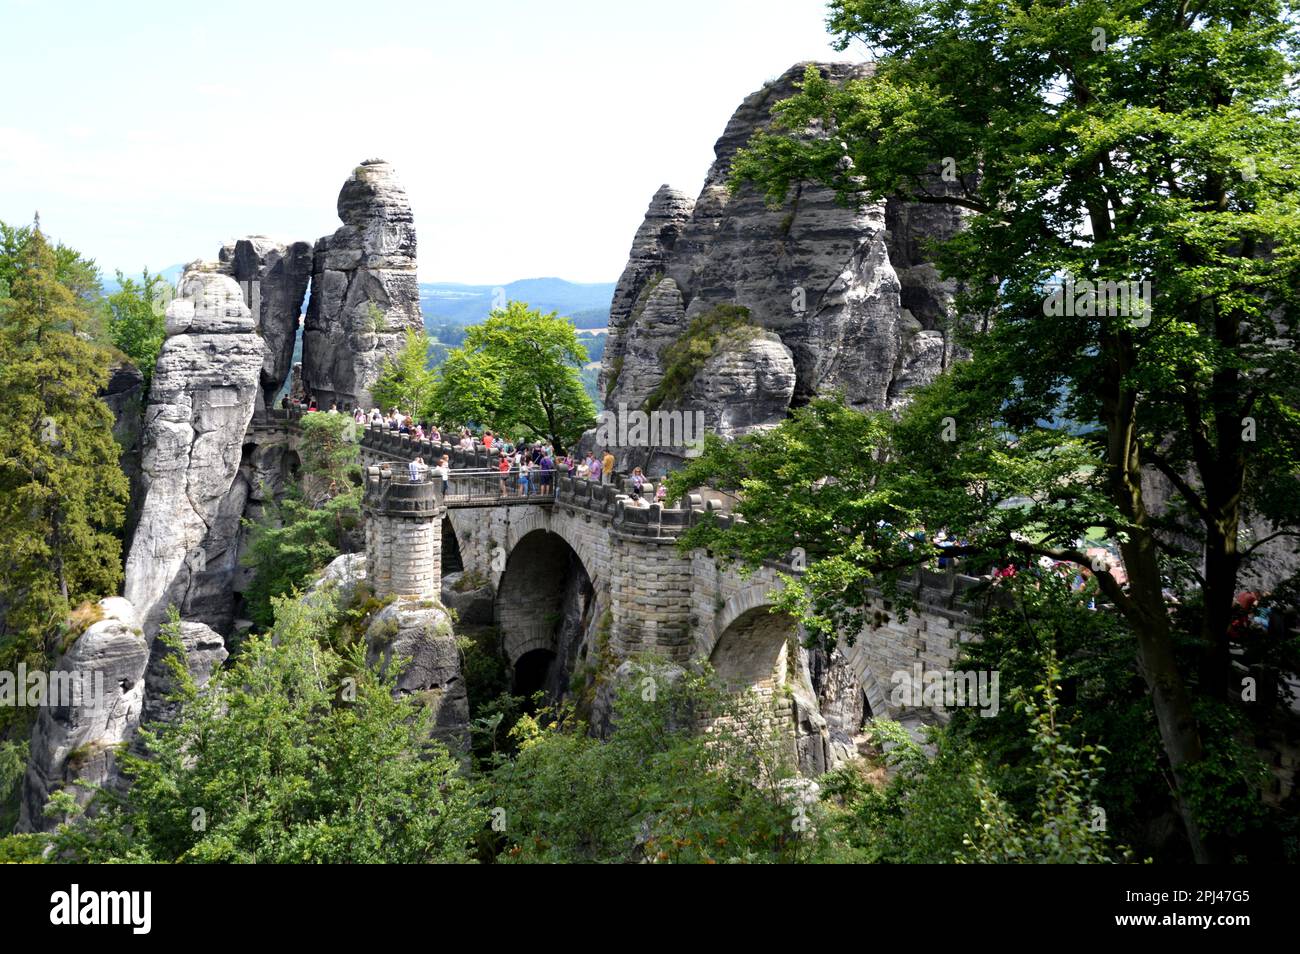 Germania, Sassonia svizzera (Sächsische Schweiz): Visitatori sul ponte di pietra che conduce alle fortificazioni di Bastei tra spettacolare roccia arenaria Foto Stock